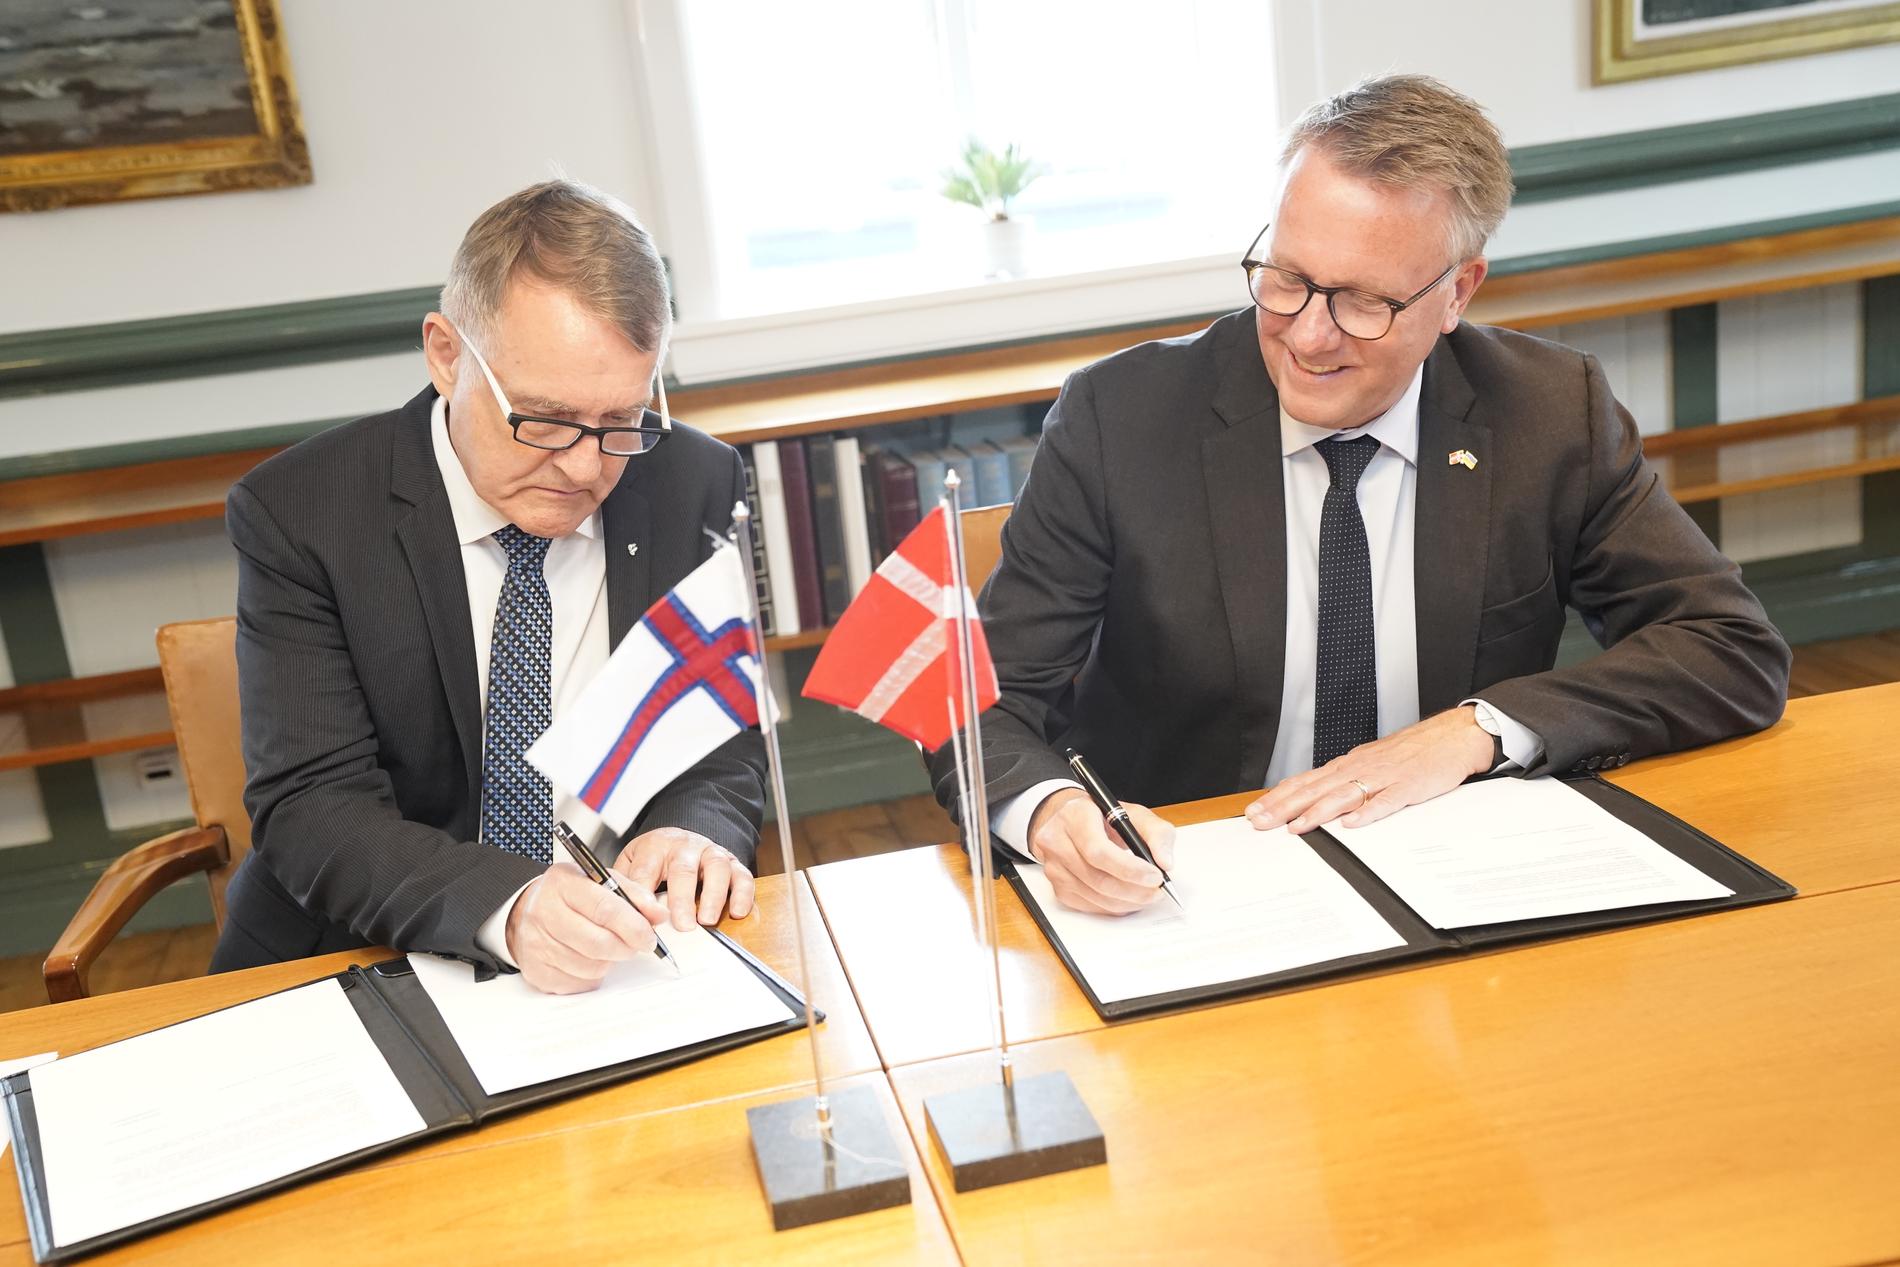 Färöarnas ansvarige för utrikesfrågor Jenis av Rana undertecknar avtalet om en ny radaranläggning utanför Torshamn tillsammans med Danmarks försvarsminister Morten Bødskov (S).